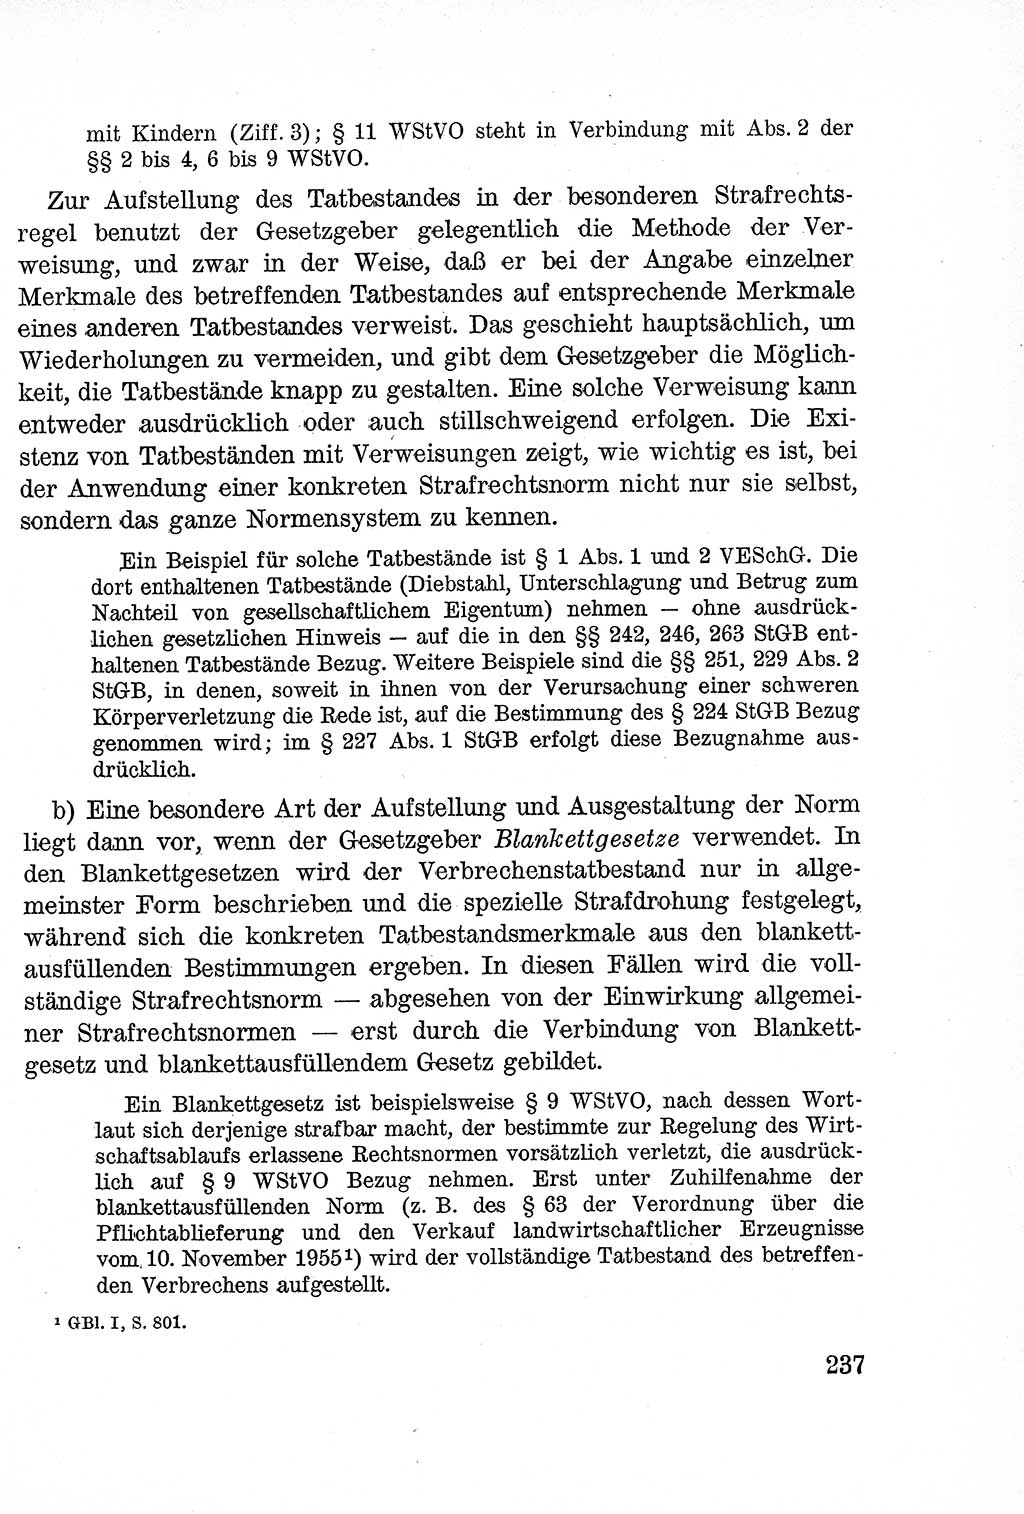 Lehrbuch des Strafrechts der Deutschen Demokratischen Republik (DDR), Allgemeiner Teil 1957, Seite 237 (Lb. Strafr. DDR AT 1957, S. 237)